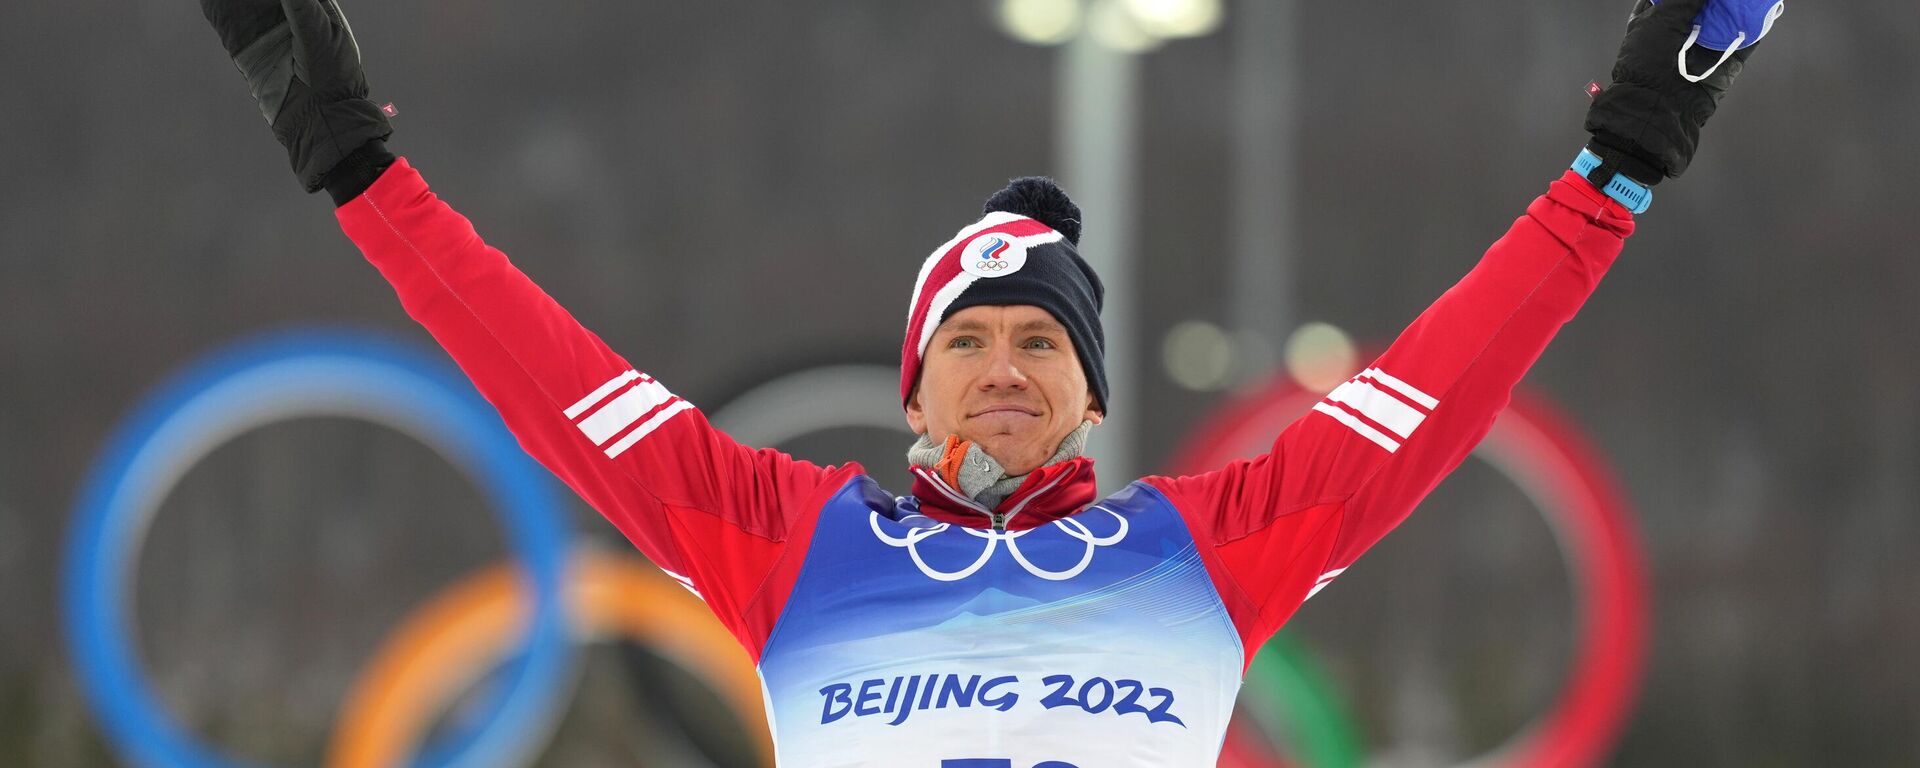 Ruski skijaš Aleksandar Bolšunov na Zimskim olimpijskim igrama u Pekingu - Sputnik Srbija, 1920, 11.02.2022